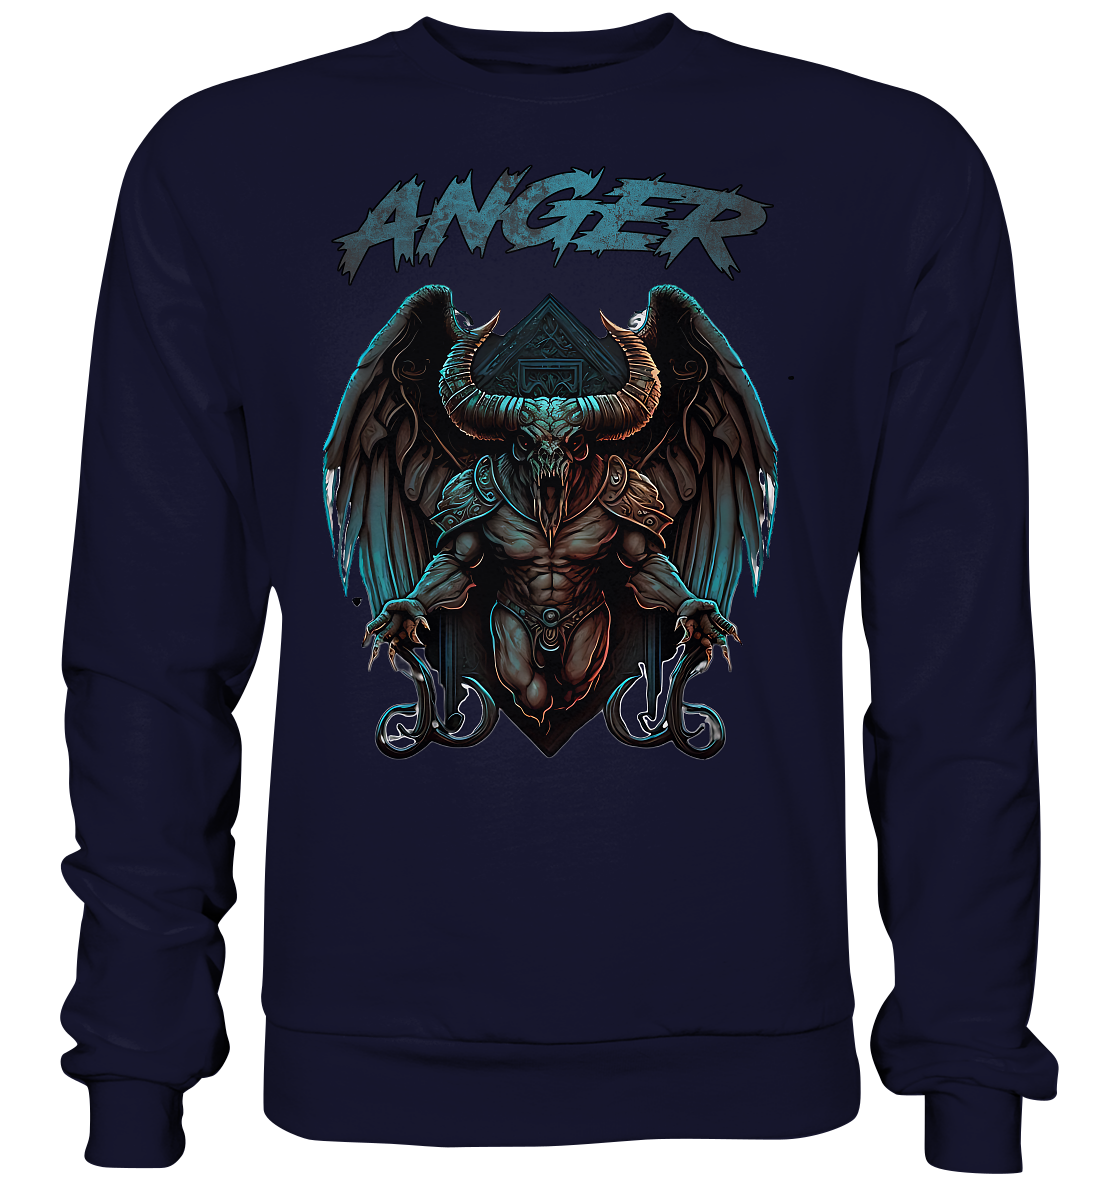 ANGER – Sweatshirt